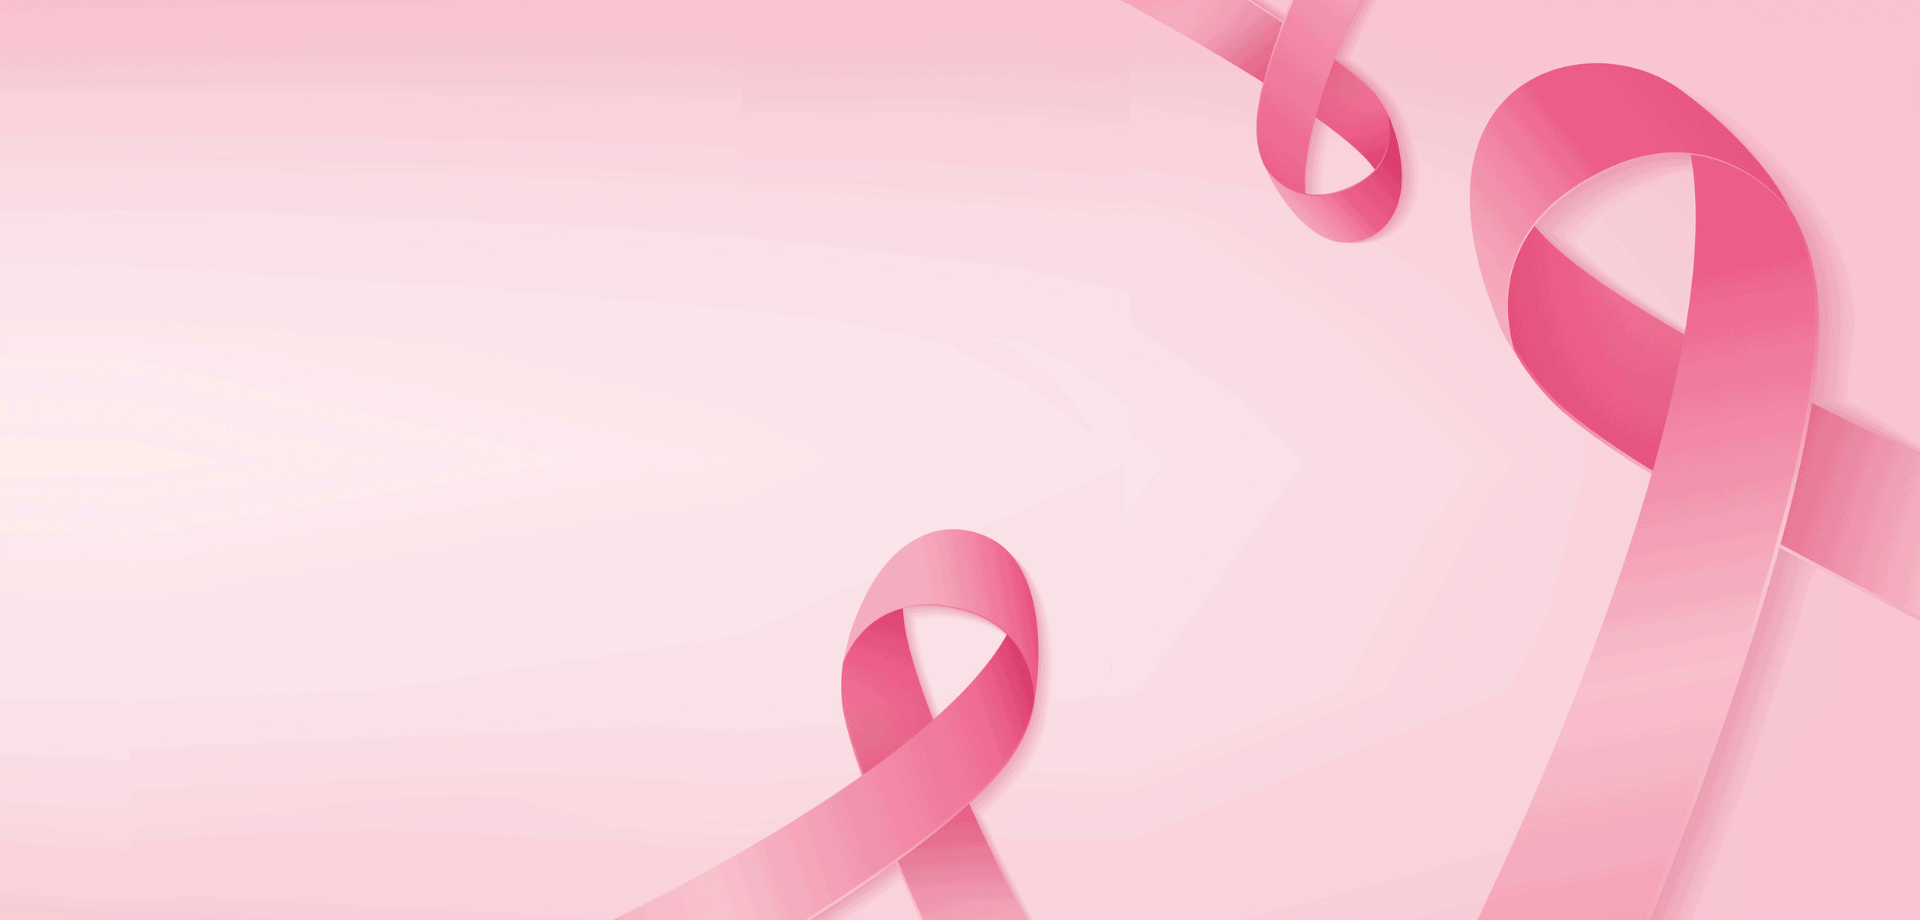 Tháng Chống ung thư vú: Tháng Chống ung thư vú là thời điểm để tất cả chúng ta quan tâm đến sức khỏe của chị em phụ nữ. Để tạo sự nhận thức về sức khỏe vú và phòng ngừa ung thư, hãy xem các hình ảnh liên quan.